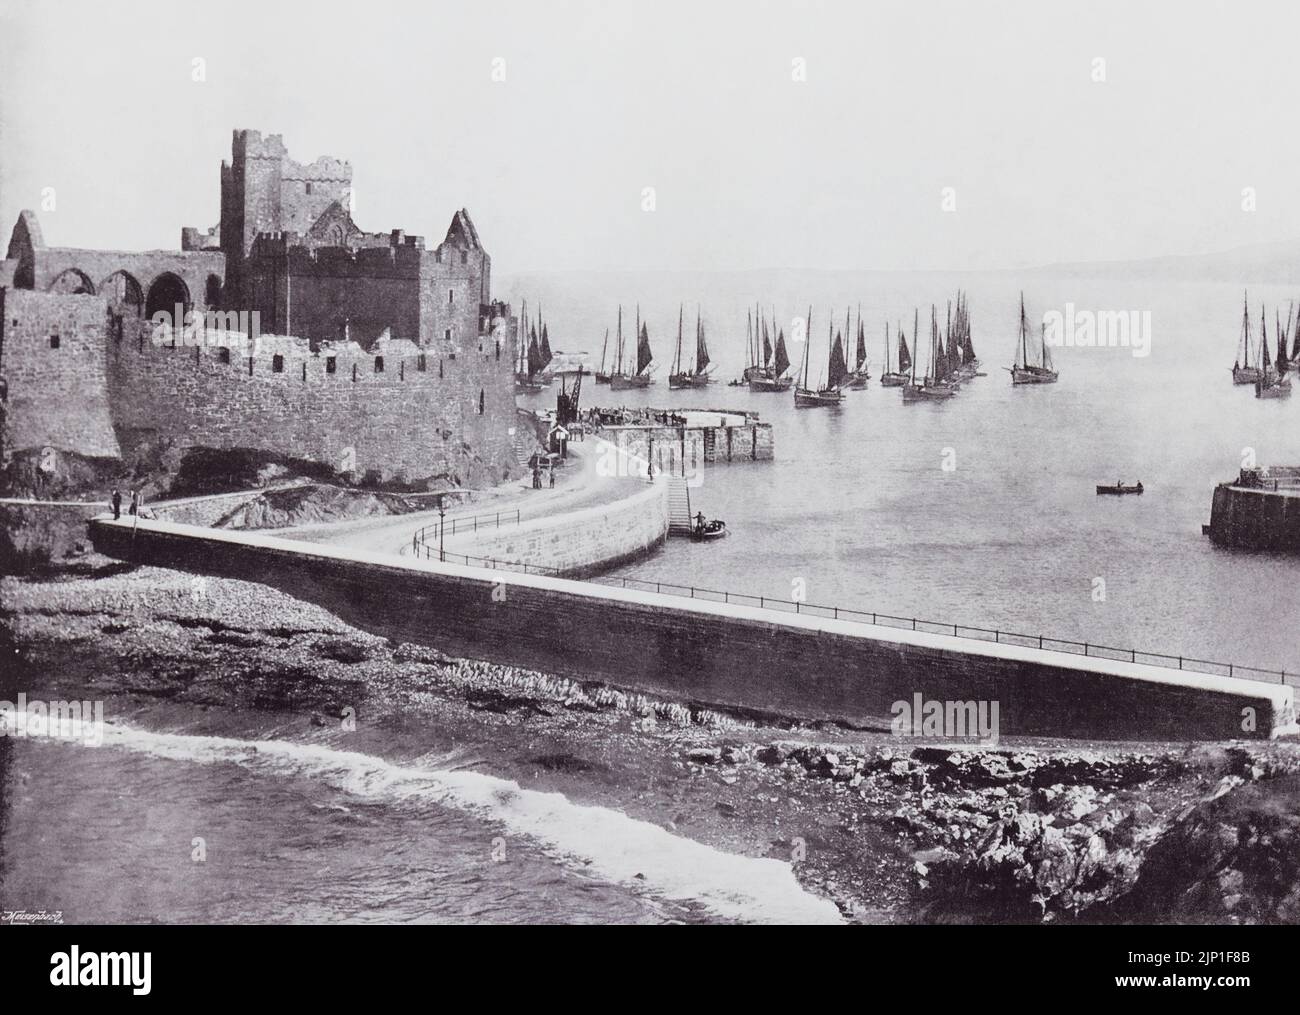 Peel, Isla de Man. El antiguo castillo y el puerto, visto aquí en el siglo 19th. De Alrededor de la Costa, un álbum de fotos de los principales lugares de interés de la costa en Gran Bretaña e Irlanda publicado en Londres, 1895, por George Newnes Limited. Foto de stock